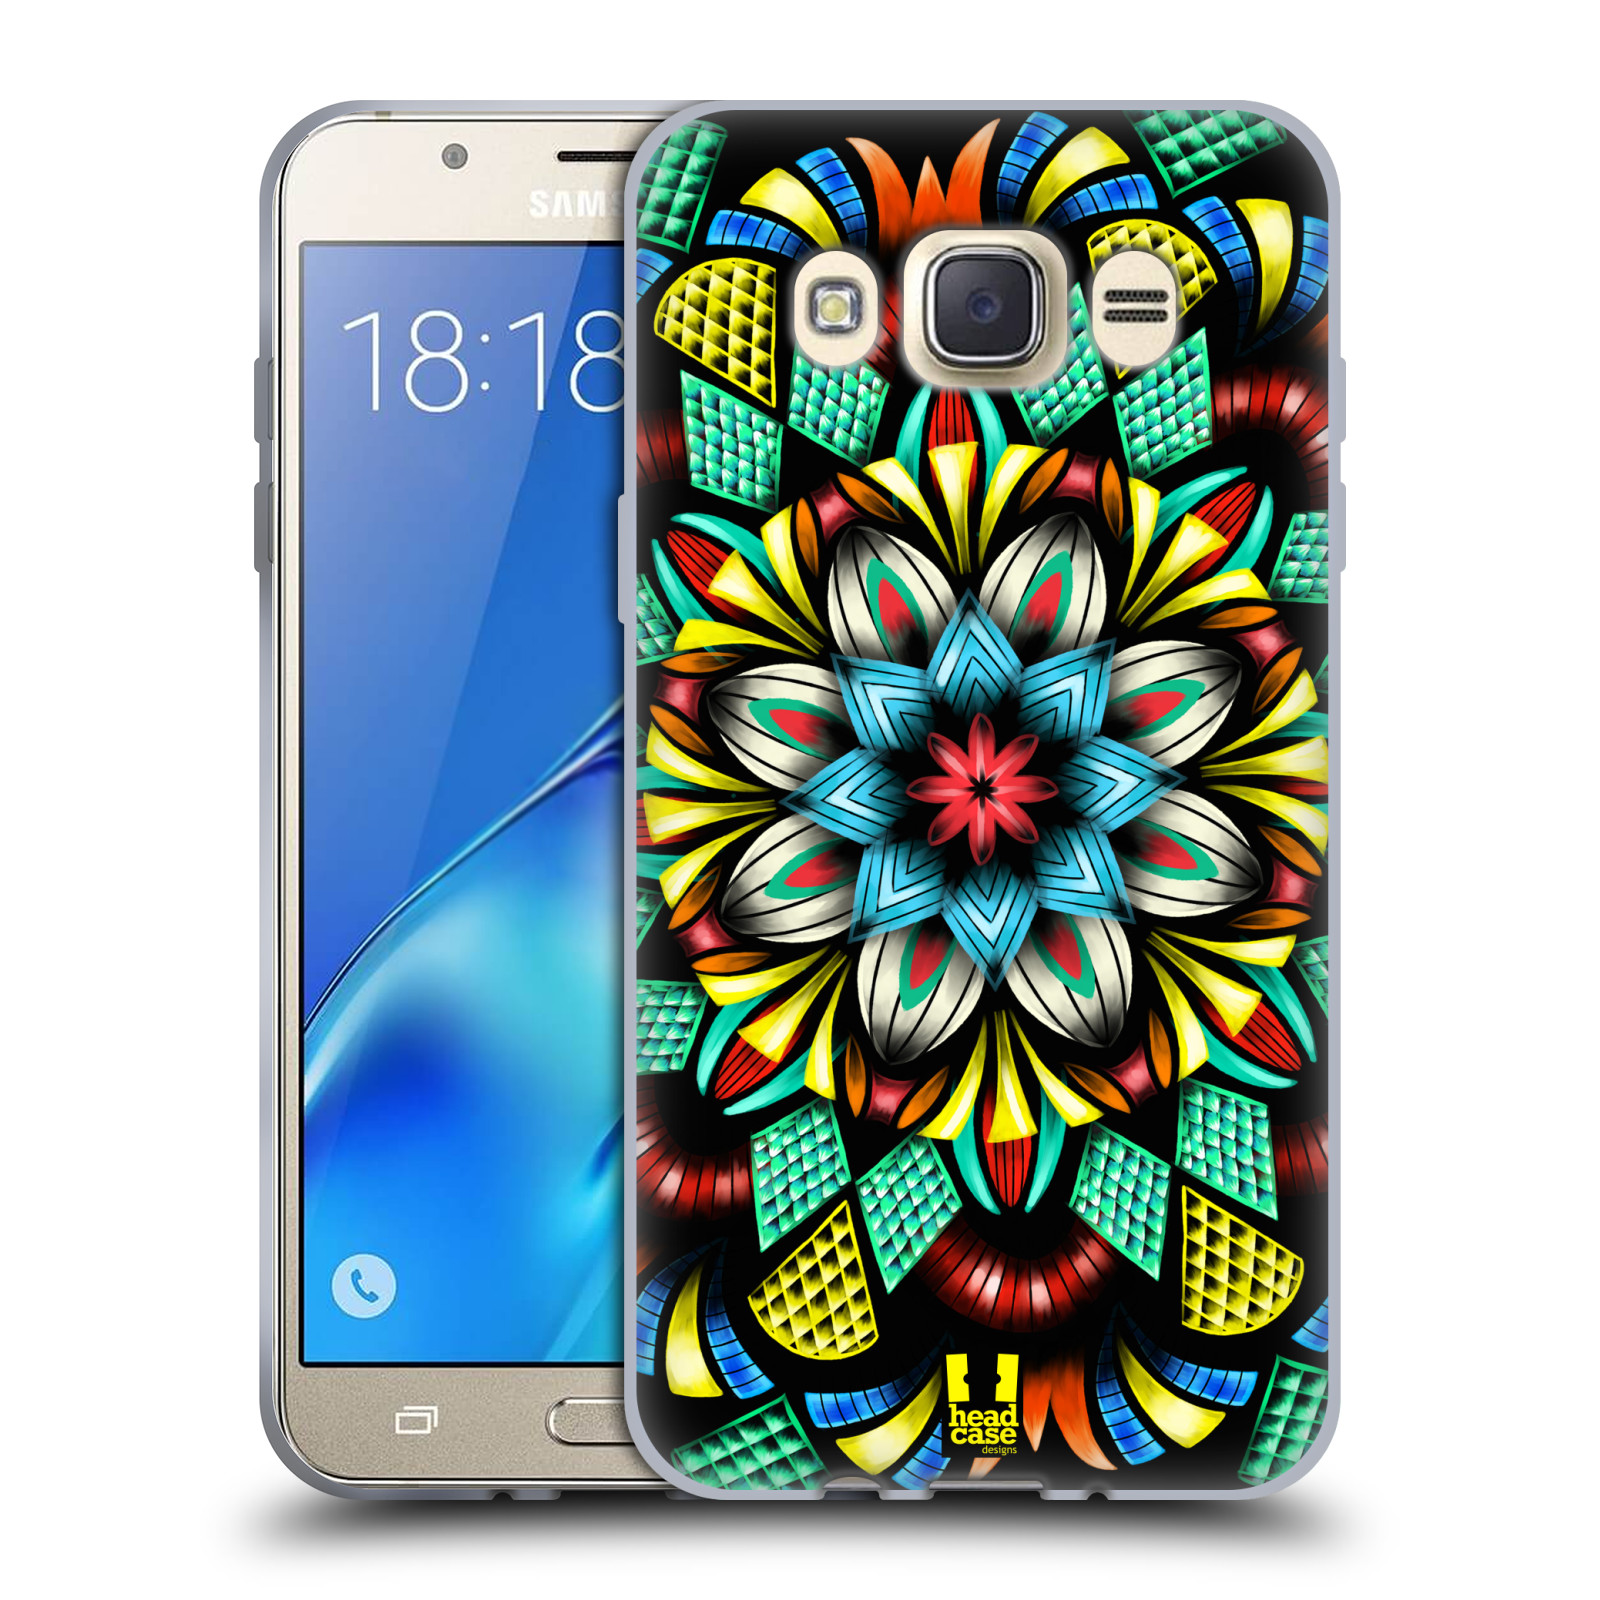 HEAD CASE silikonový obal, kryt na mobil Samsung Galaxy J7 2016 (J710, J710F) vzor Indie Mandala kaleidoskop barevný vzor TRADIČNÍ